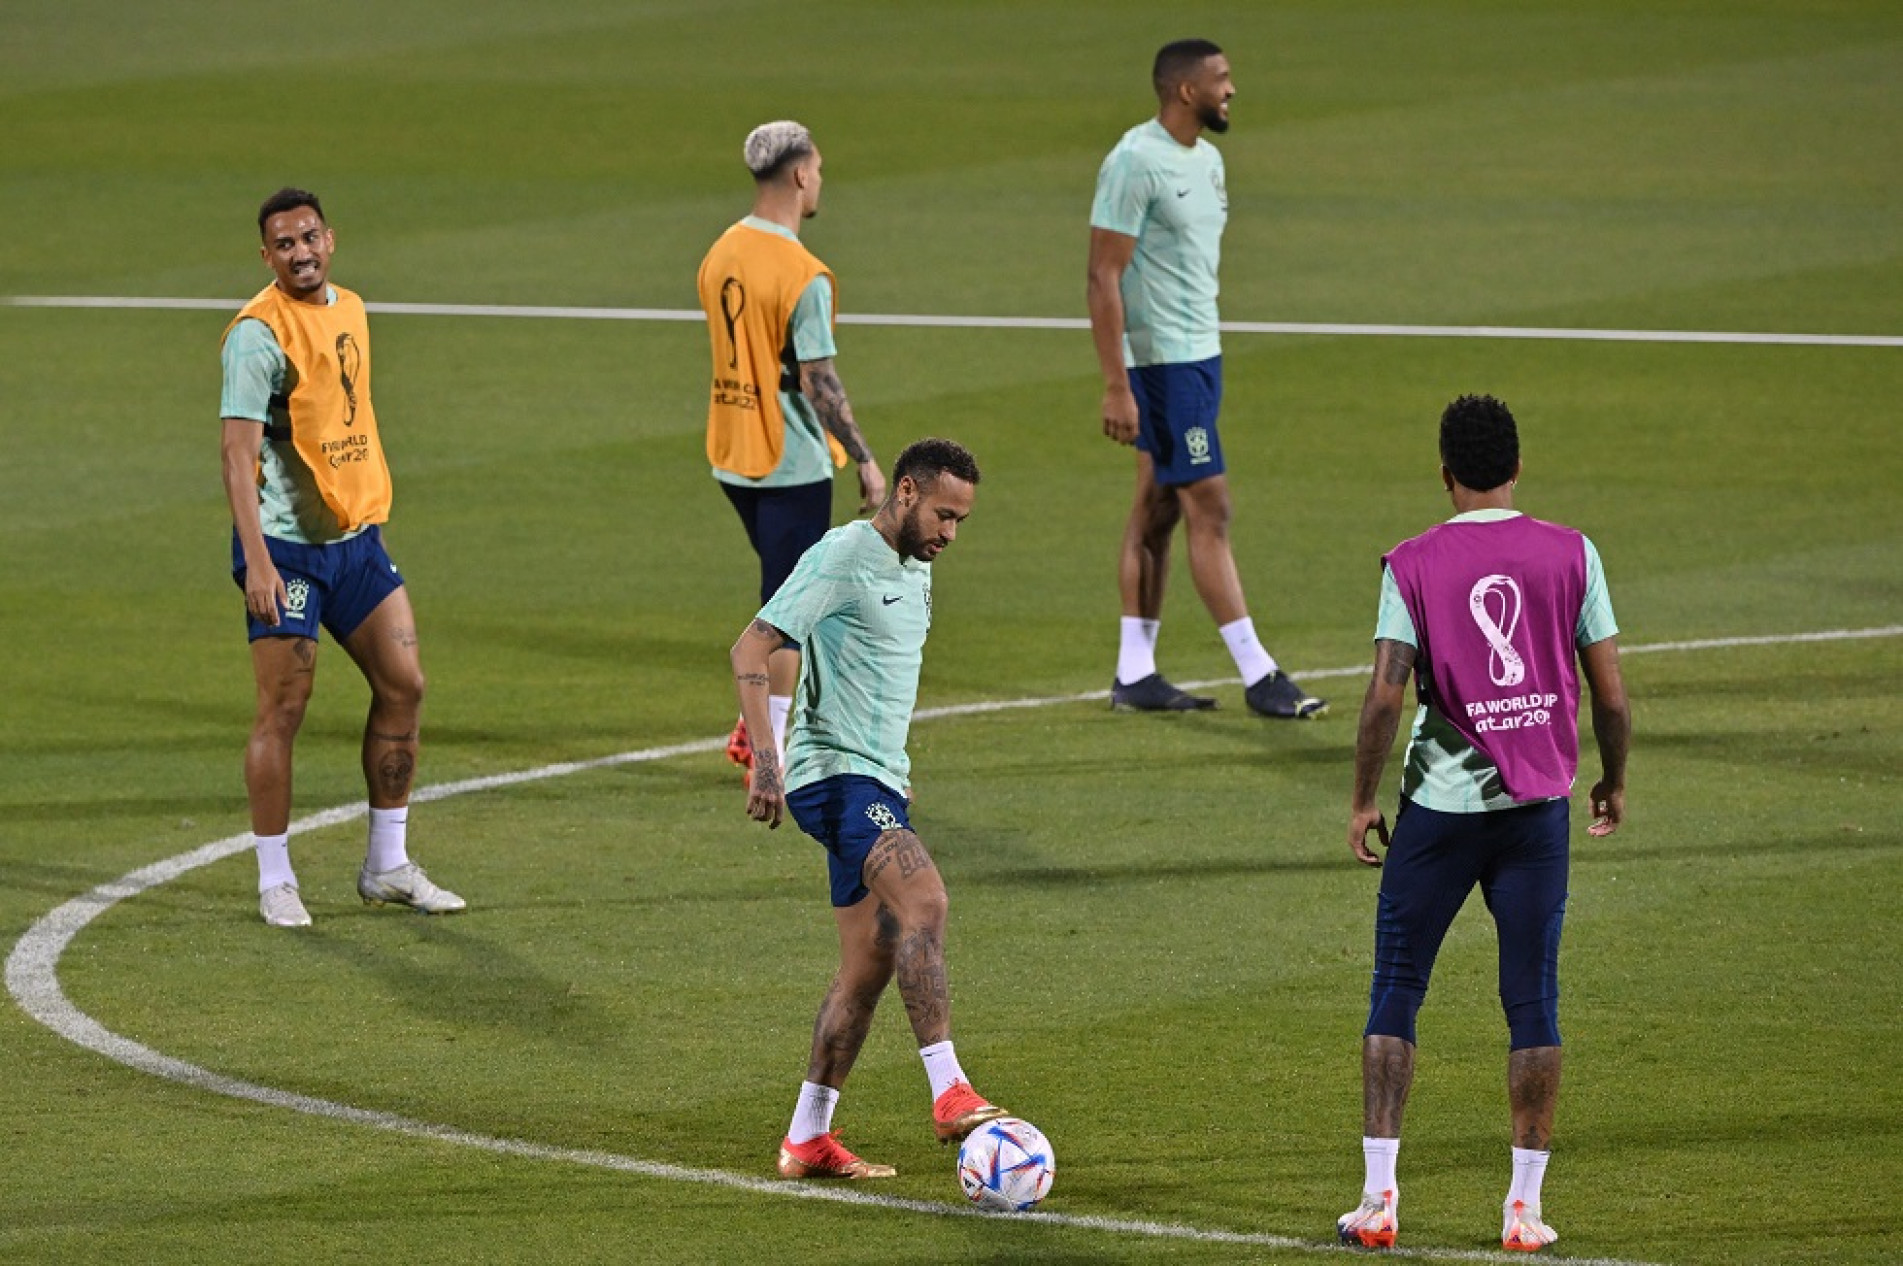 Neymar vai jogar contra a Coreia do Sul, afirma Tite